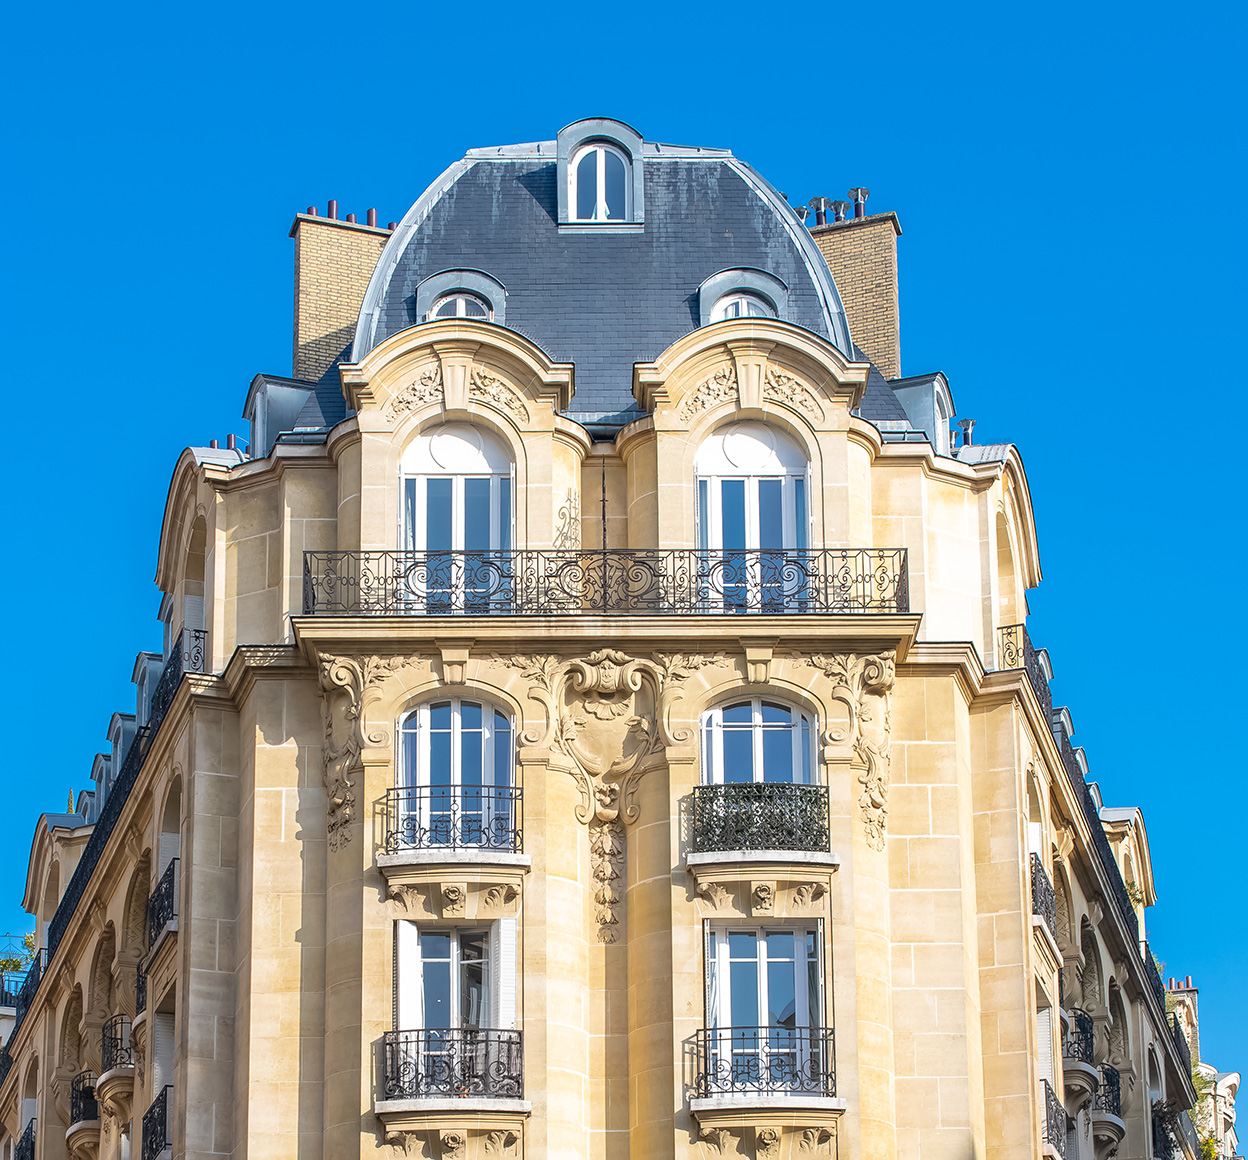 Vue en contre-plongée d’un bâtiment historique typique en pierre de taille à Neuilly-sur-Seine, en France, qui offre une idée de l’échelle et de la beauté de l’architecture de la ville.